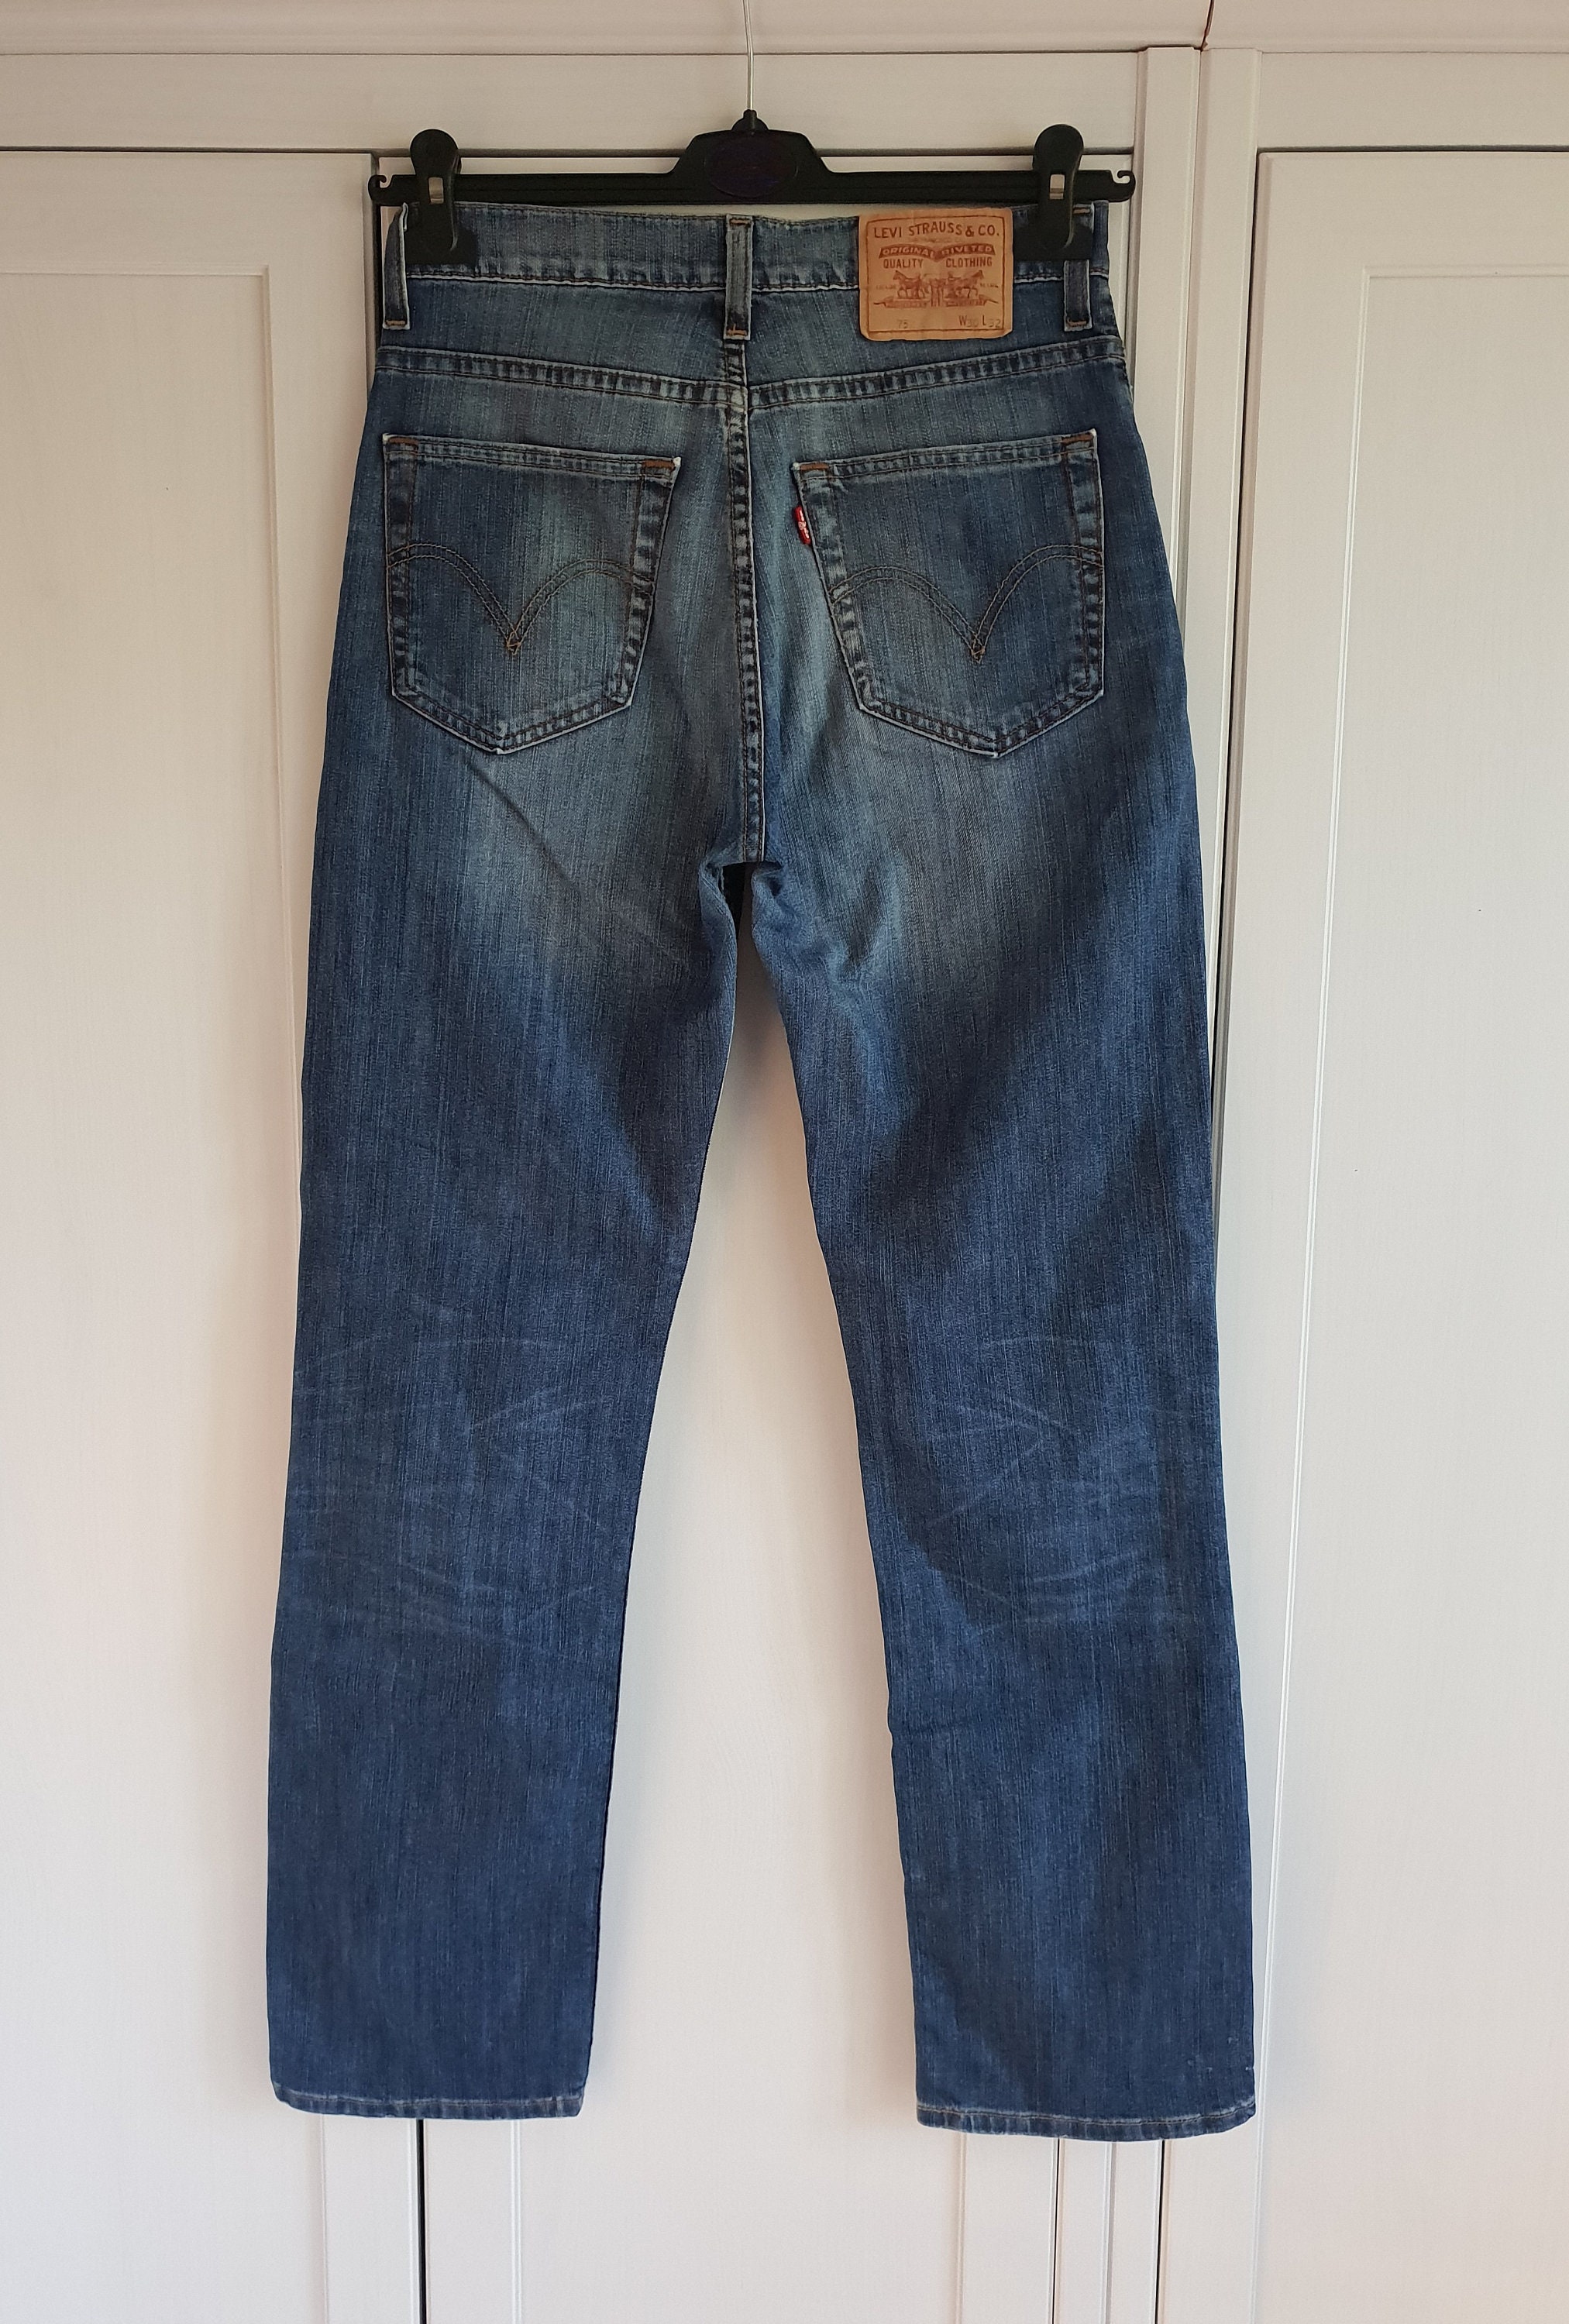 Vintage Levis 752 Jeans Blue Denim Levi's Jeans Pants Men | Etsy